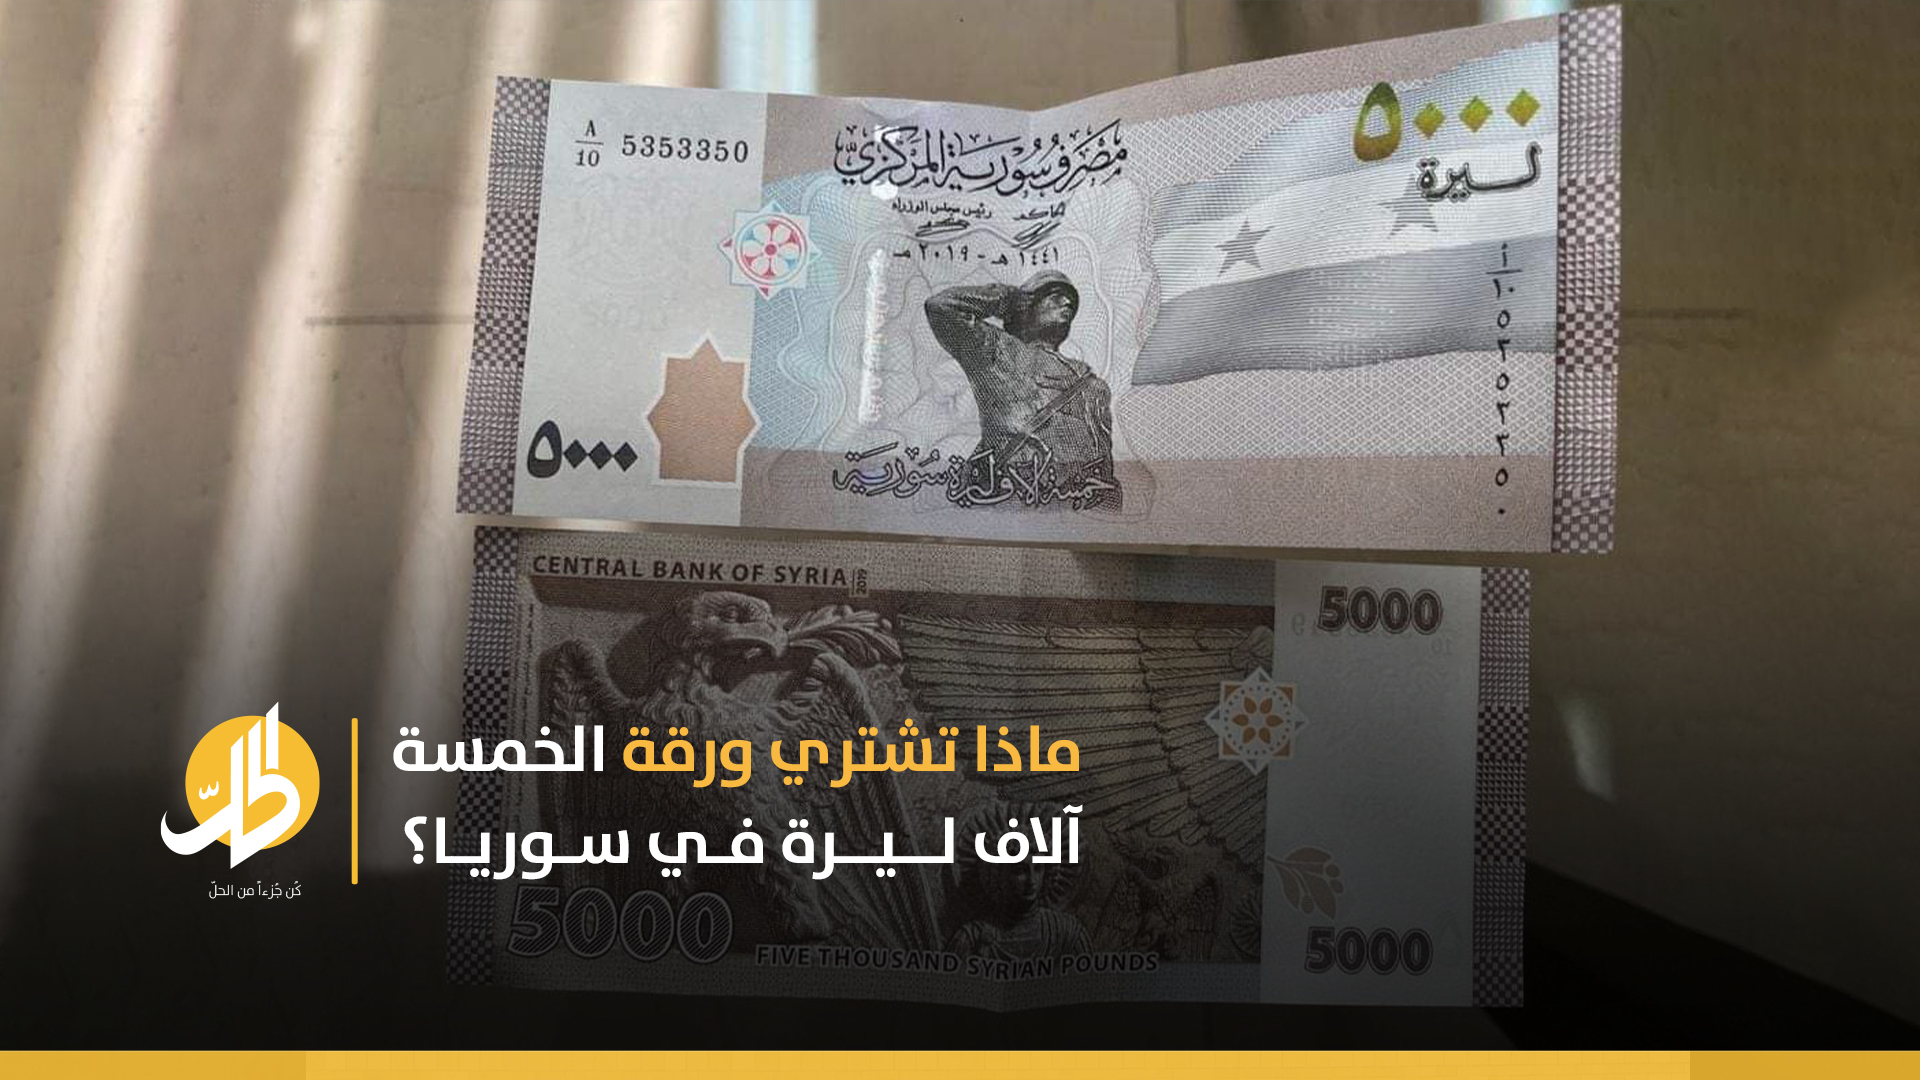 “التمويل بالعجز”: هل ساهم طرح فئة الخمسة آلاف ليرة بزيادة التضخّم في سوريا؟